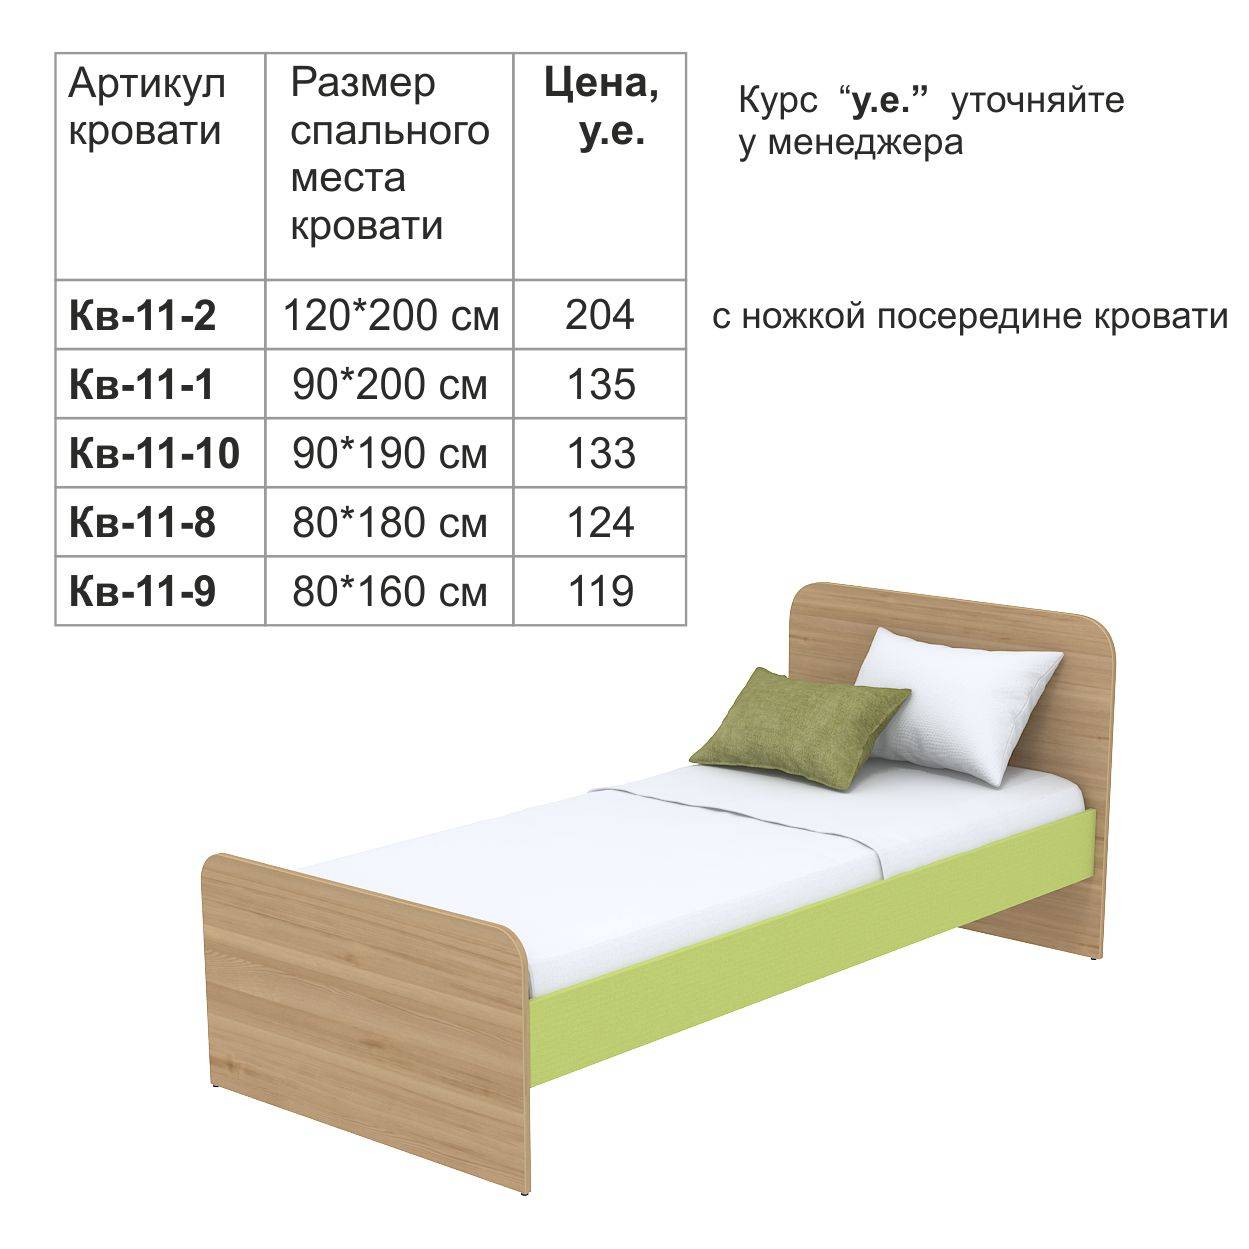 Габариты 1.5 спальной кровати Размеры